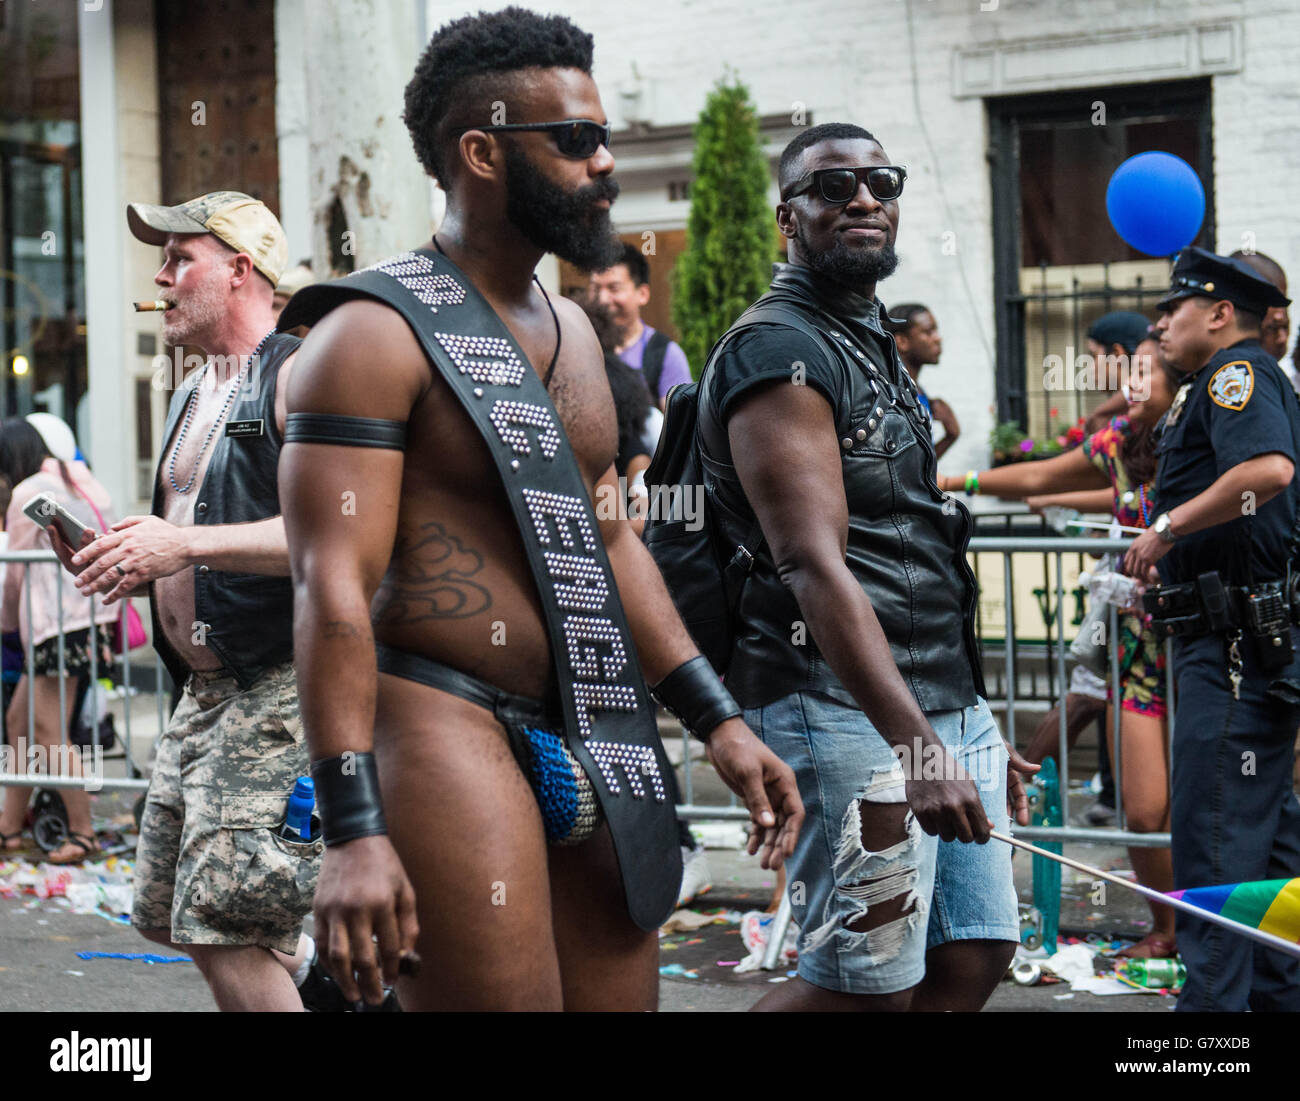 Monsieur l'ours 'cuir' homme marchant dans la Parade de la Gay Pride à New York, NY 2016 Banque D'Images